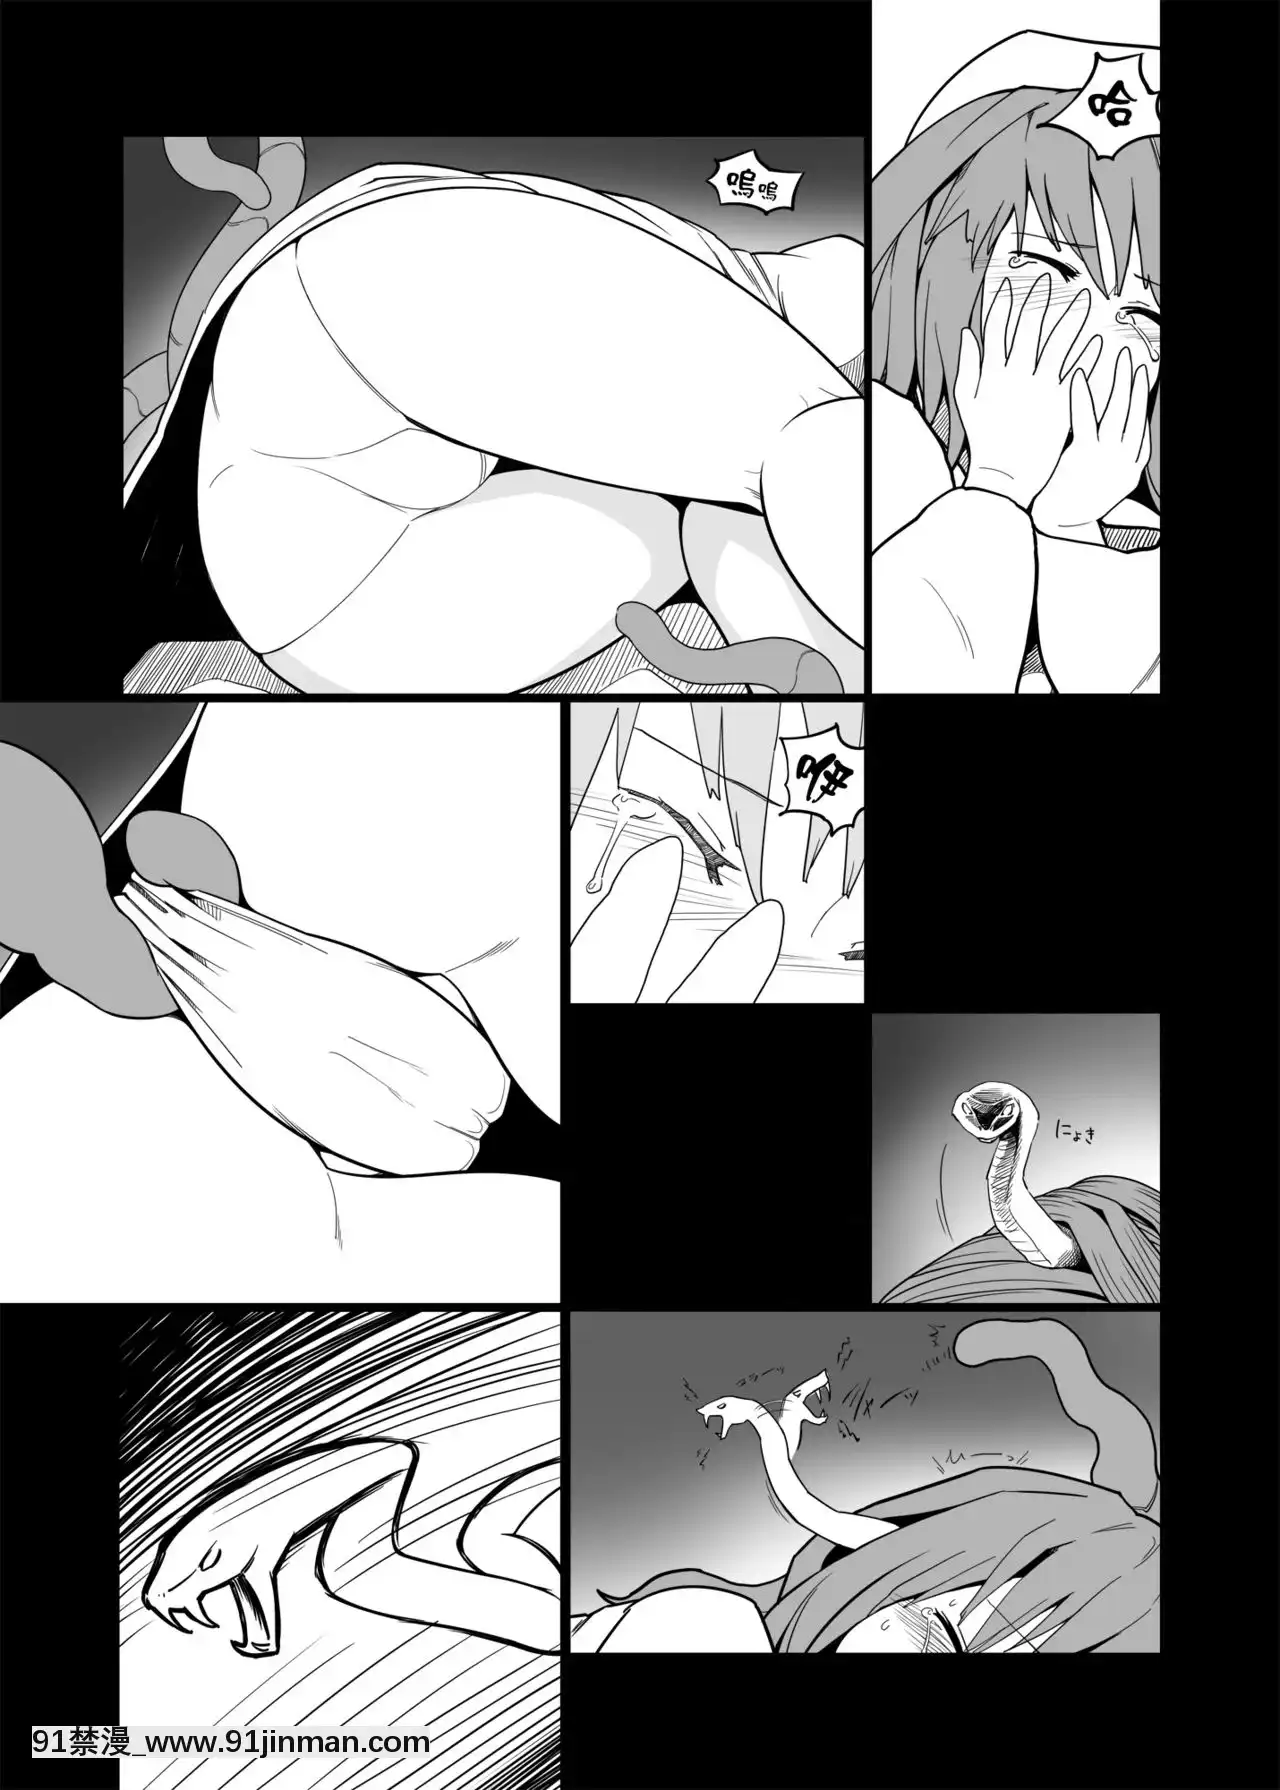 Bộ sưu tập phim sex phương Đông. (Dự án Oriental) [DL Phiên bản]【anime hentai loan luan khong che】